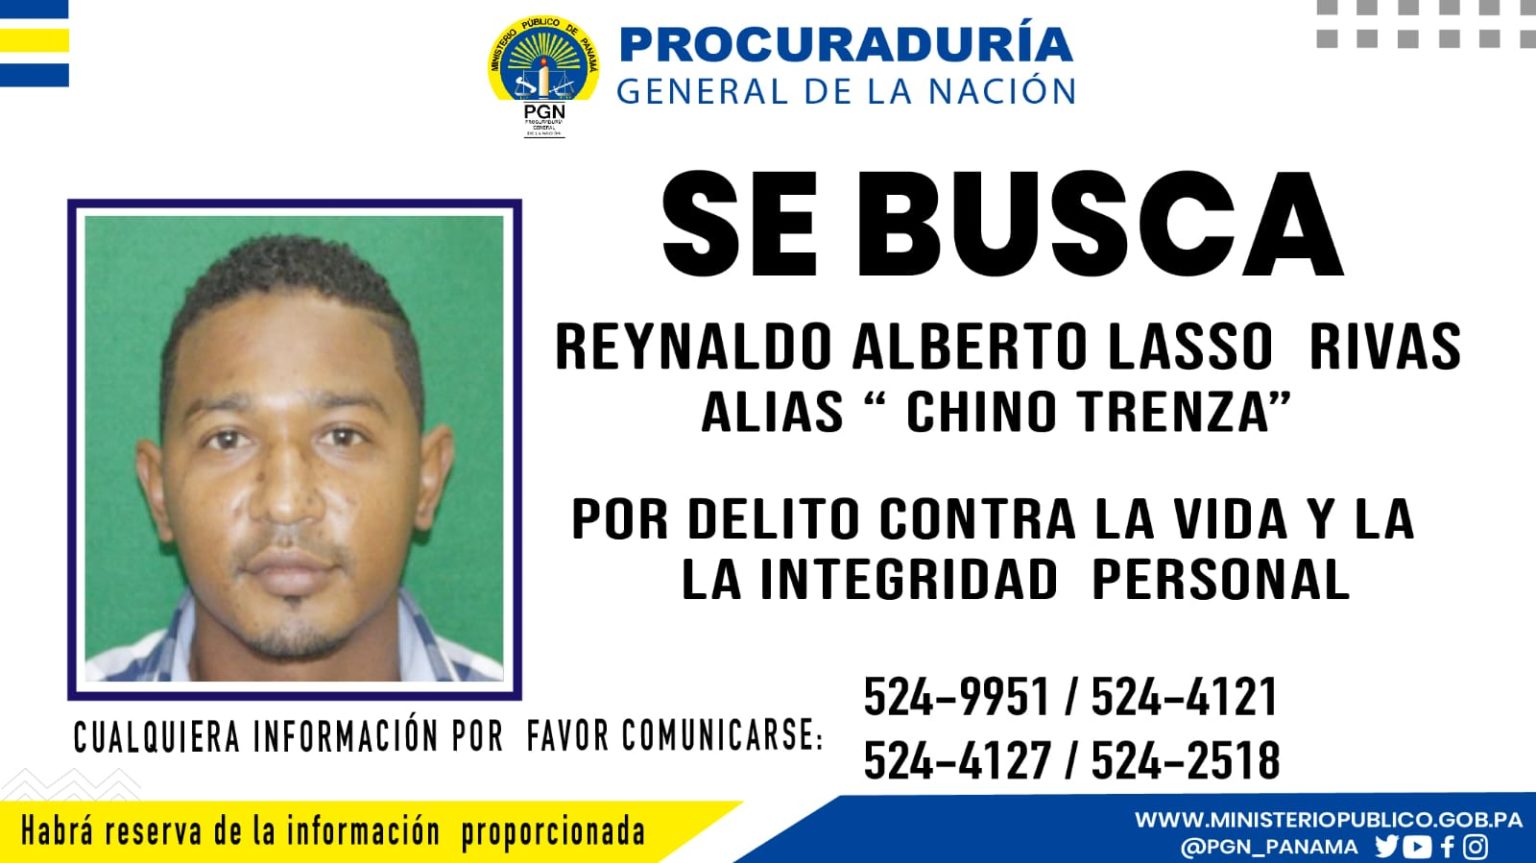 Featured image for “MP solicita apoyo para ubicar a «Chino Trenza», presunto implicado en homicidio de menor de 10 años en Rana de Oro”